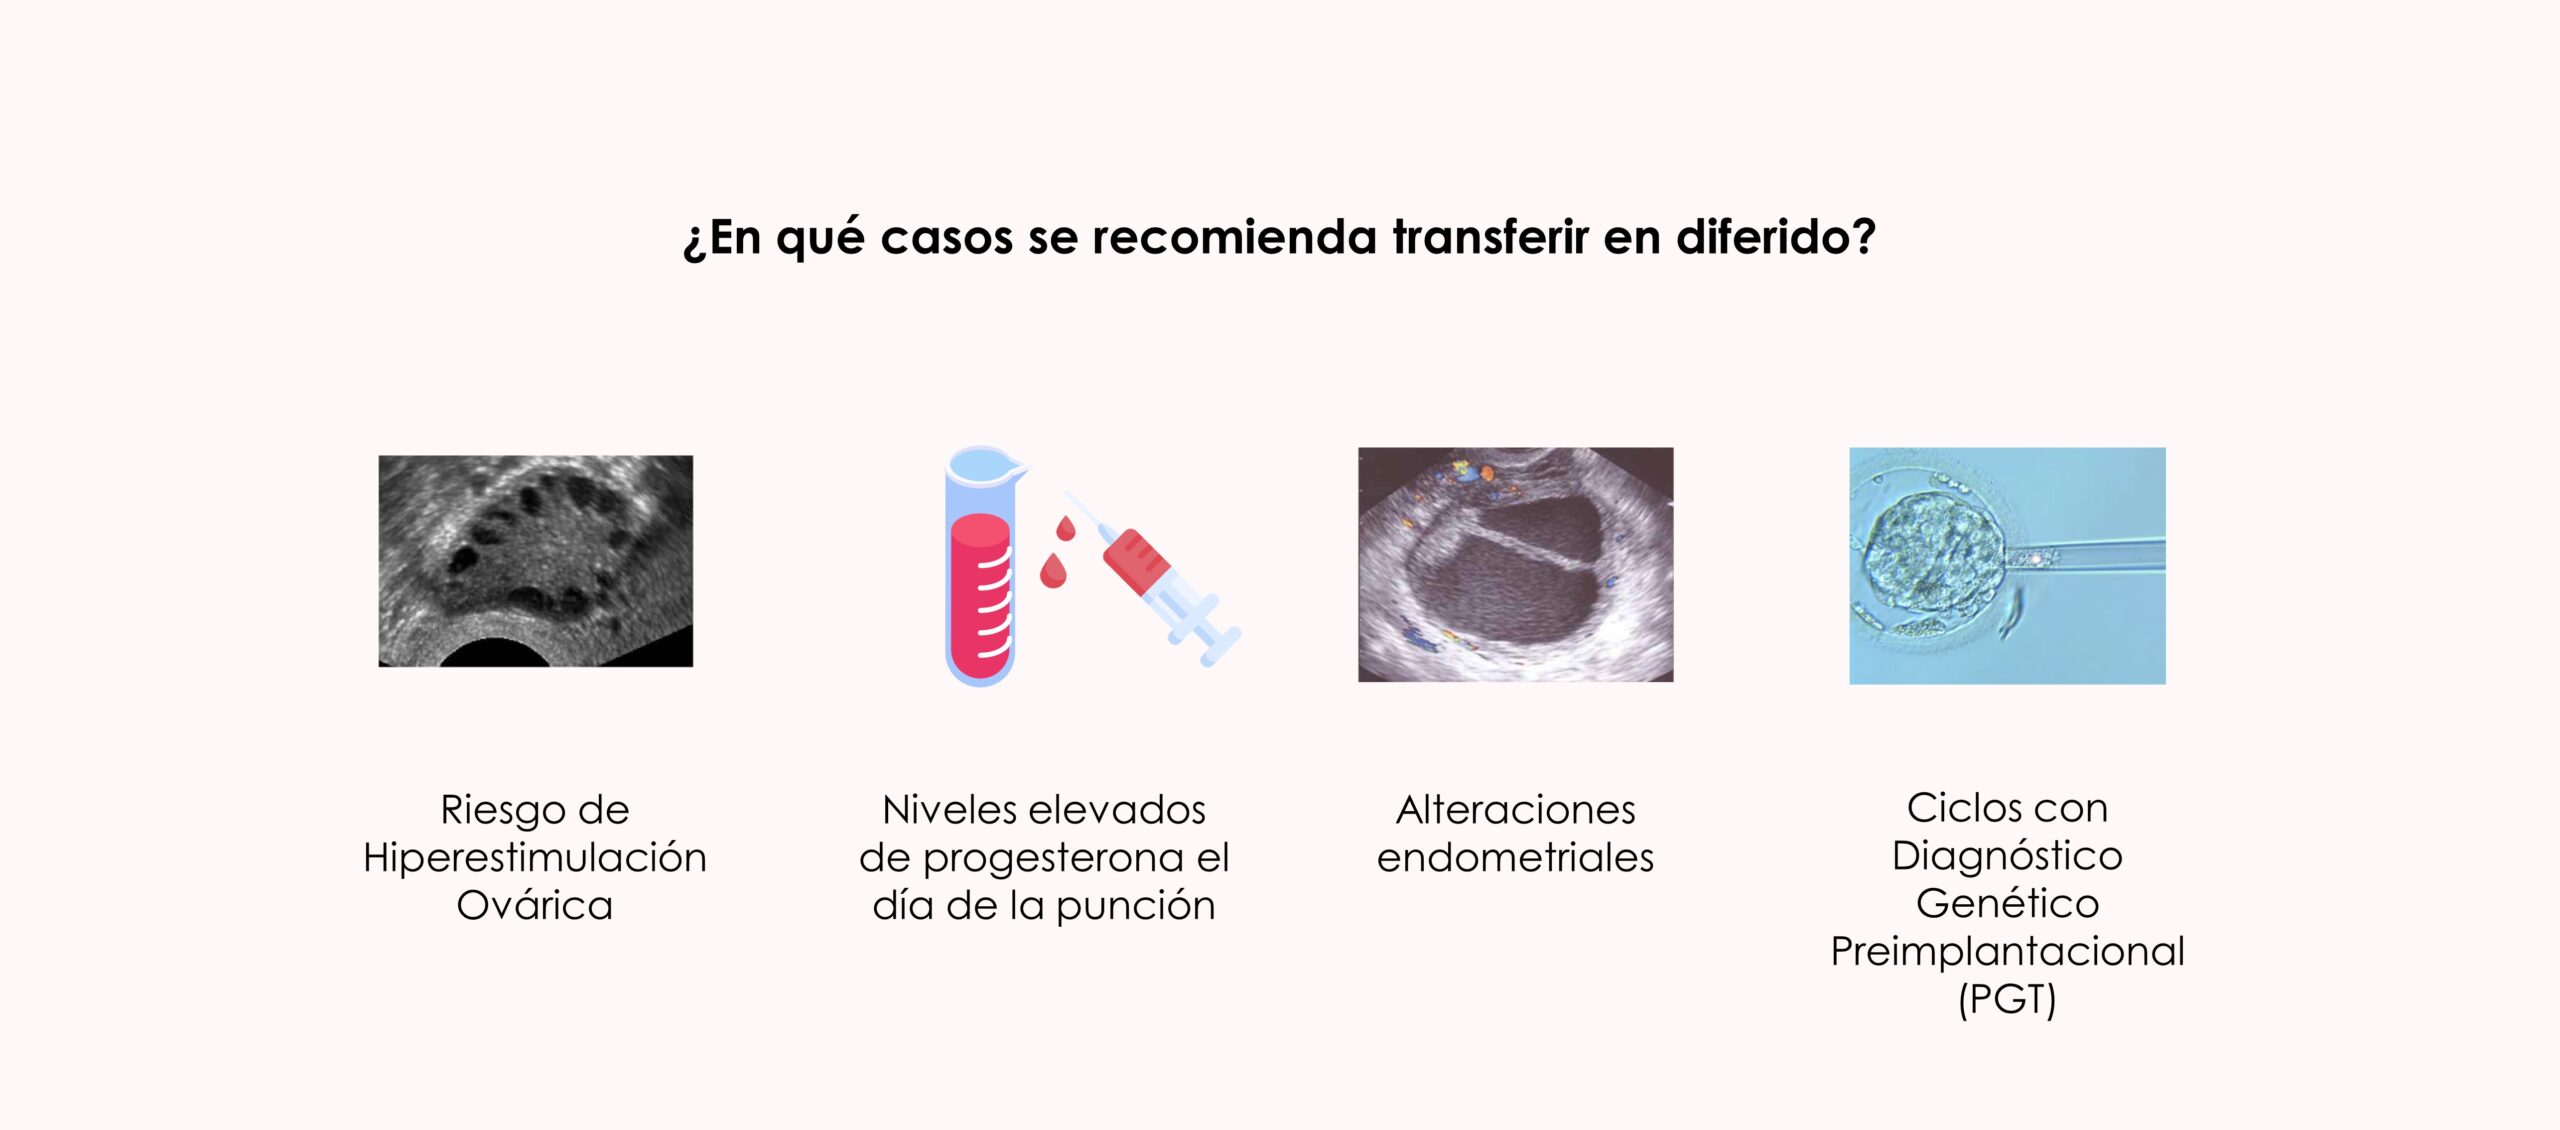 ¿En qué casos se recomienda transferir los embriones en diferido?